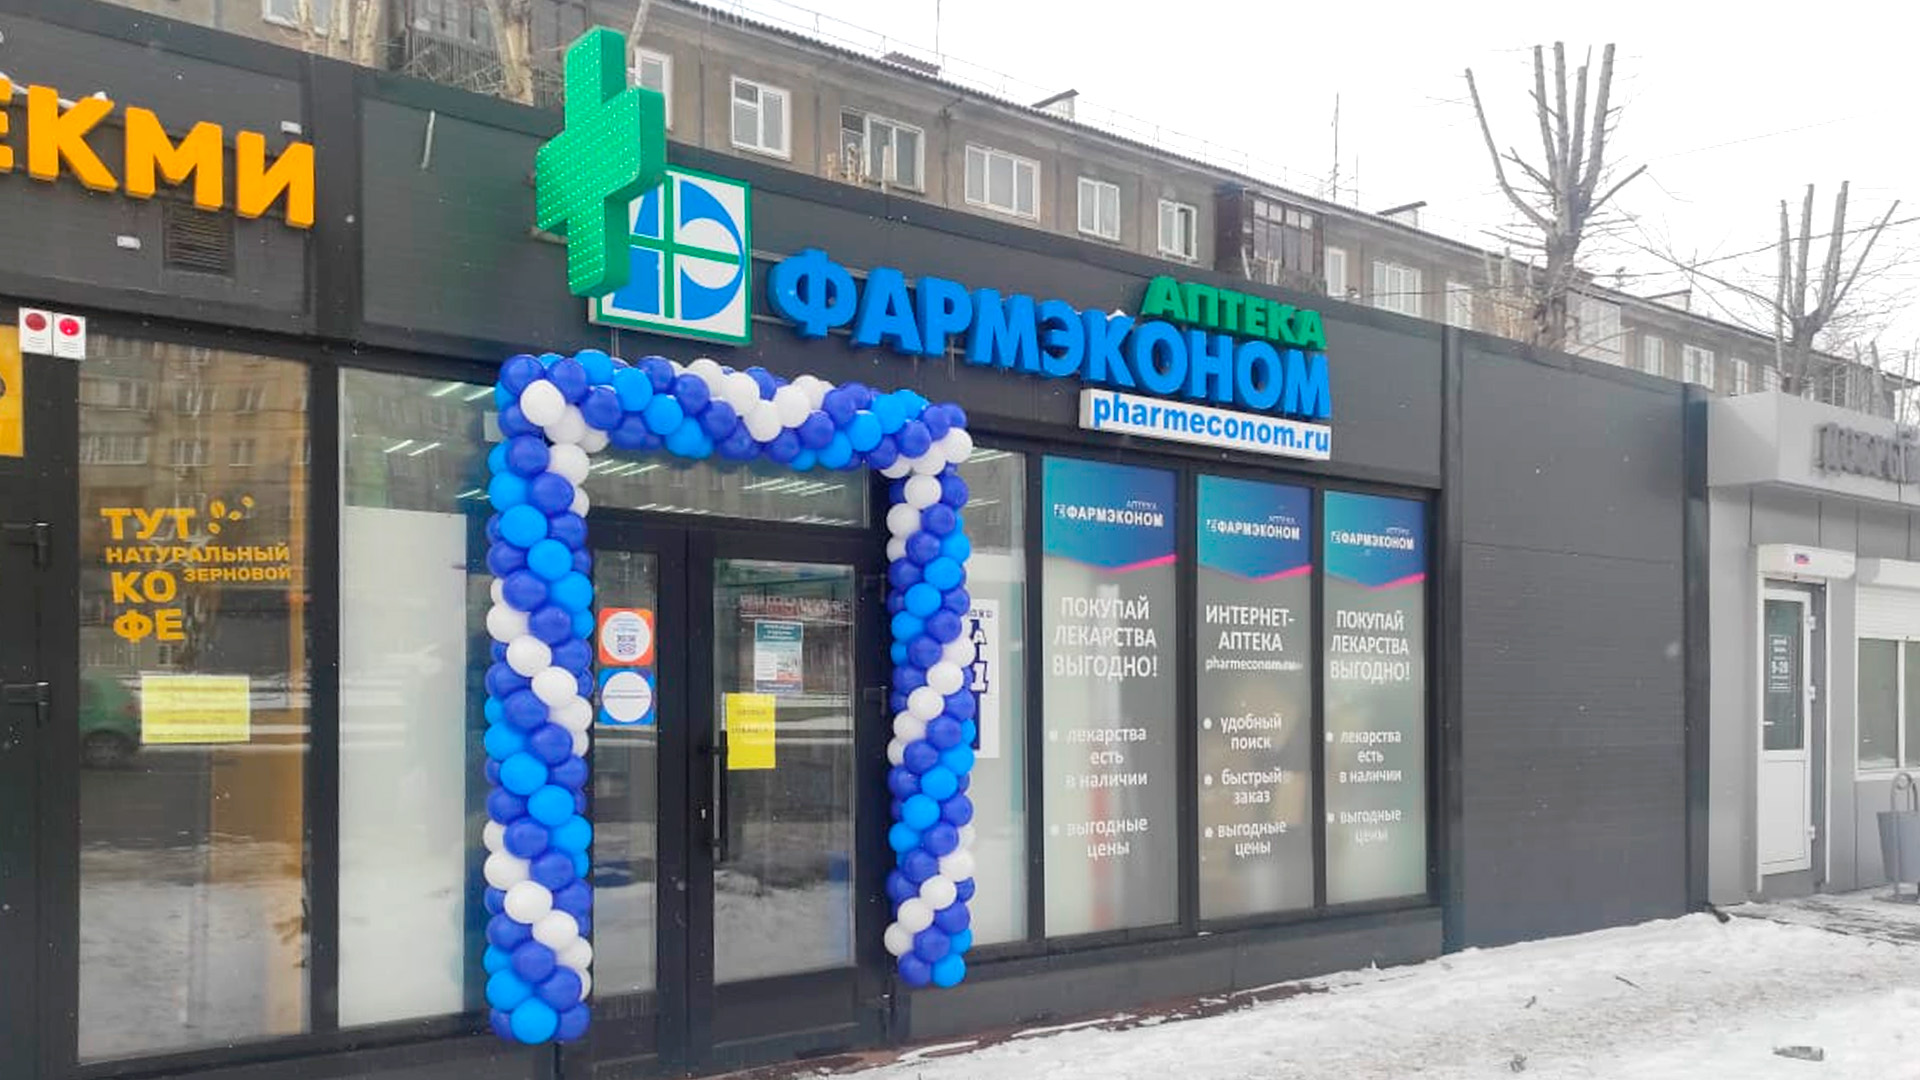 В городе Красноярск открылась новая аптека ФАРМЭКОНОМ! 